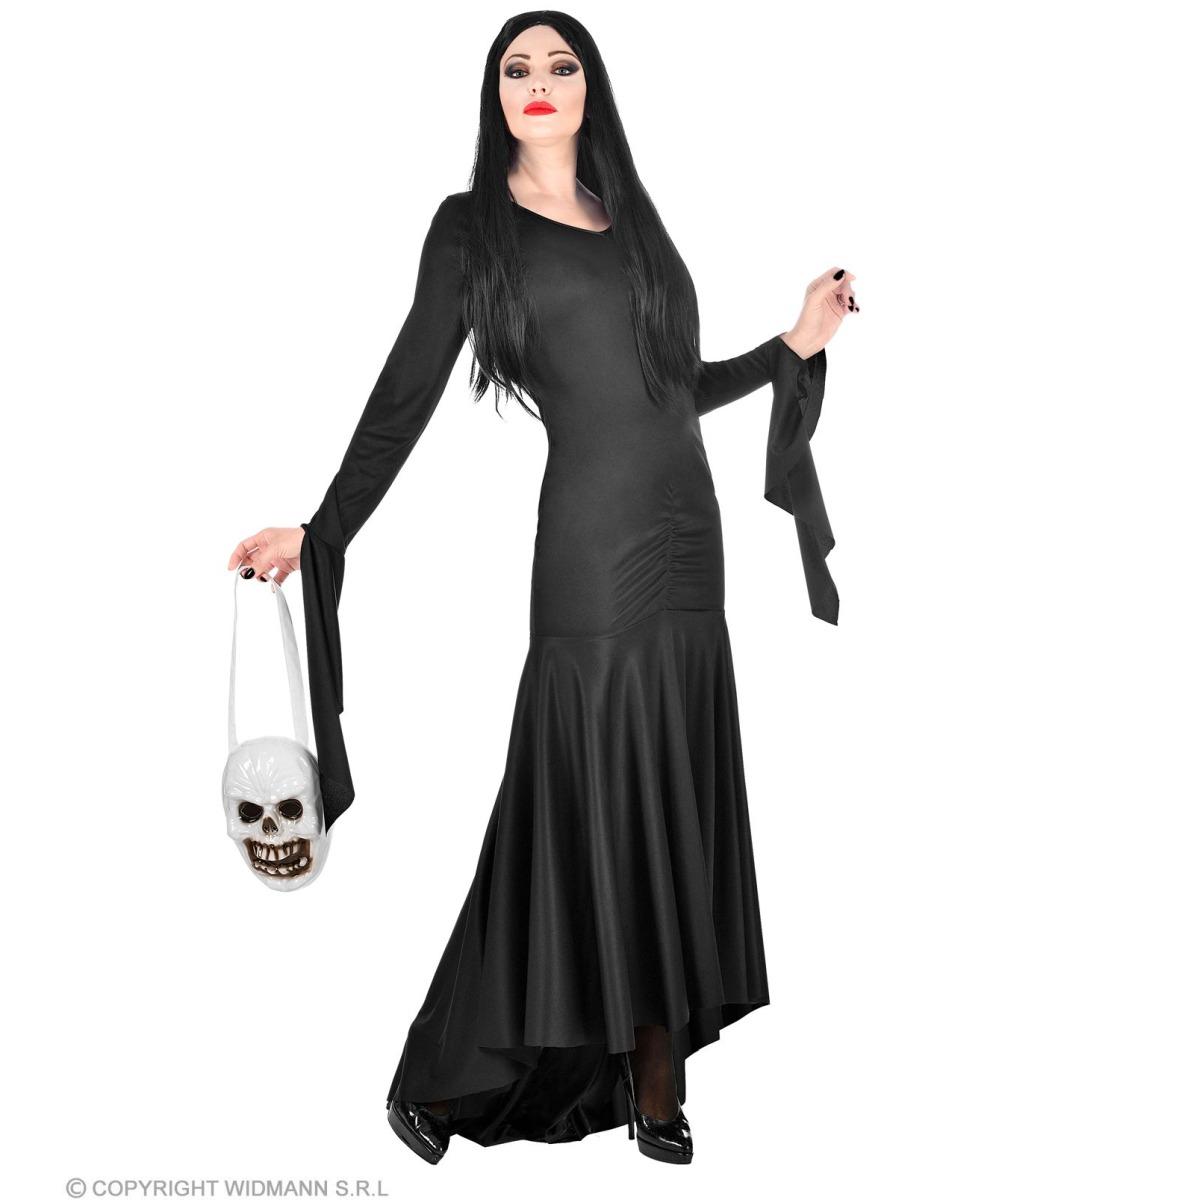 Costume Mortisia Famiglia Addams: Acquista Online il Tuo Look da Halloween